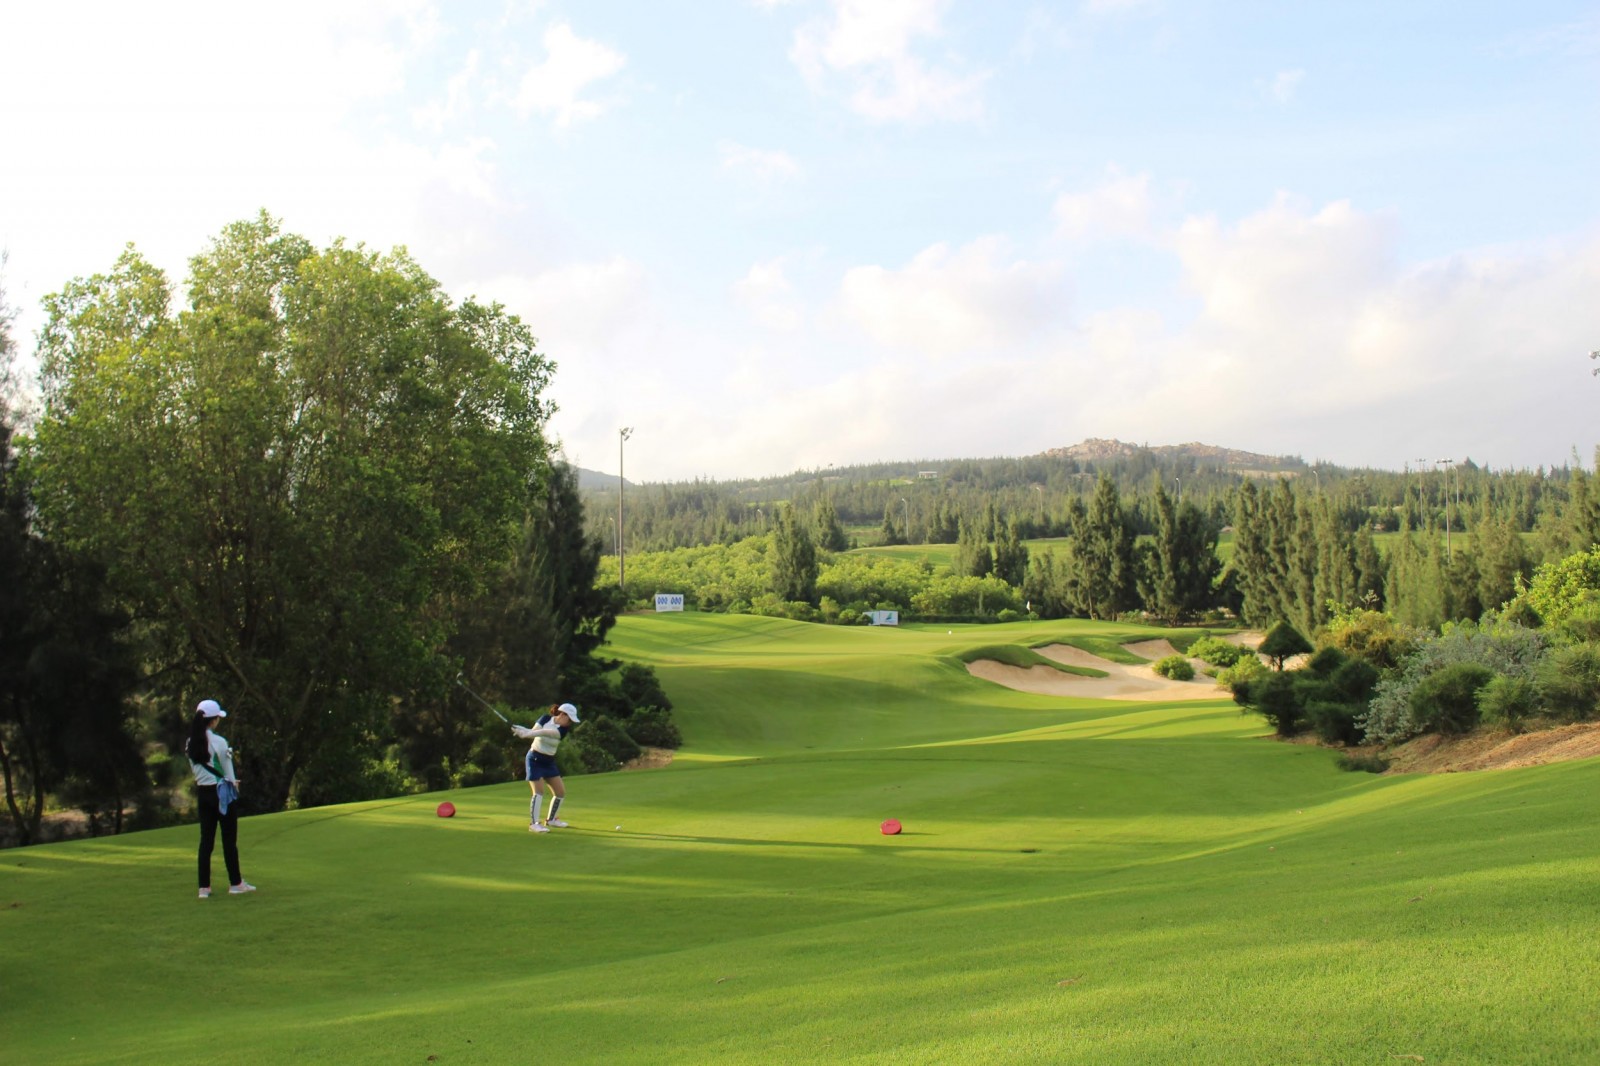 Ảnh 1: Tập đoàn FLC sở hữu hệ thống sân golf 5 sao đẳng cấp quốc tế trải dài từ Bắc tới Nam